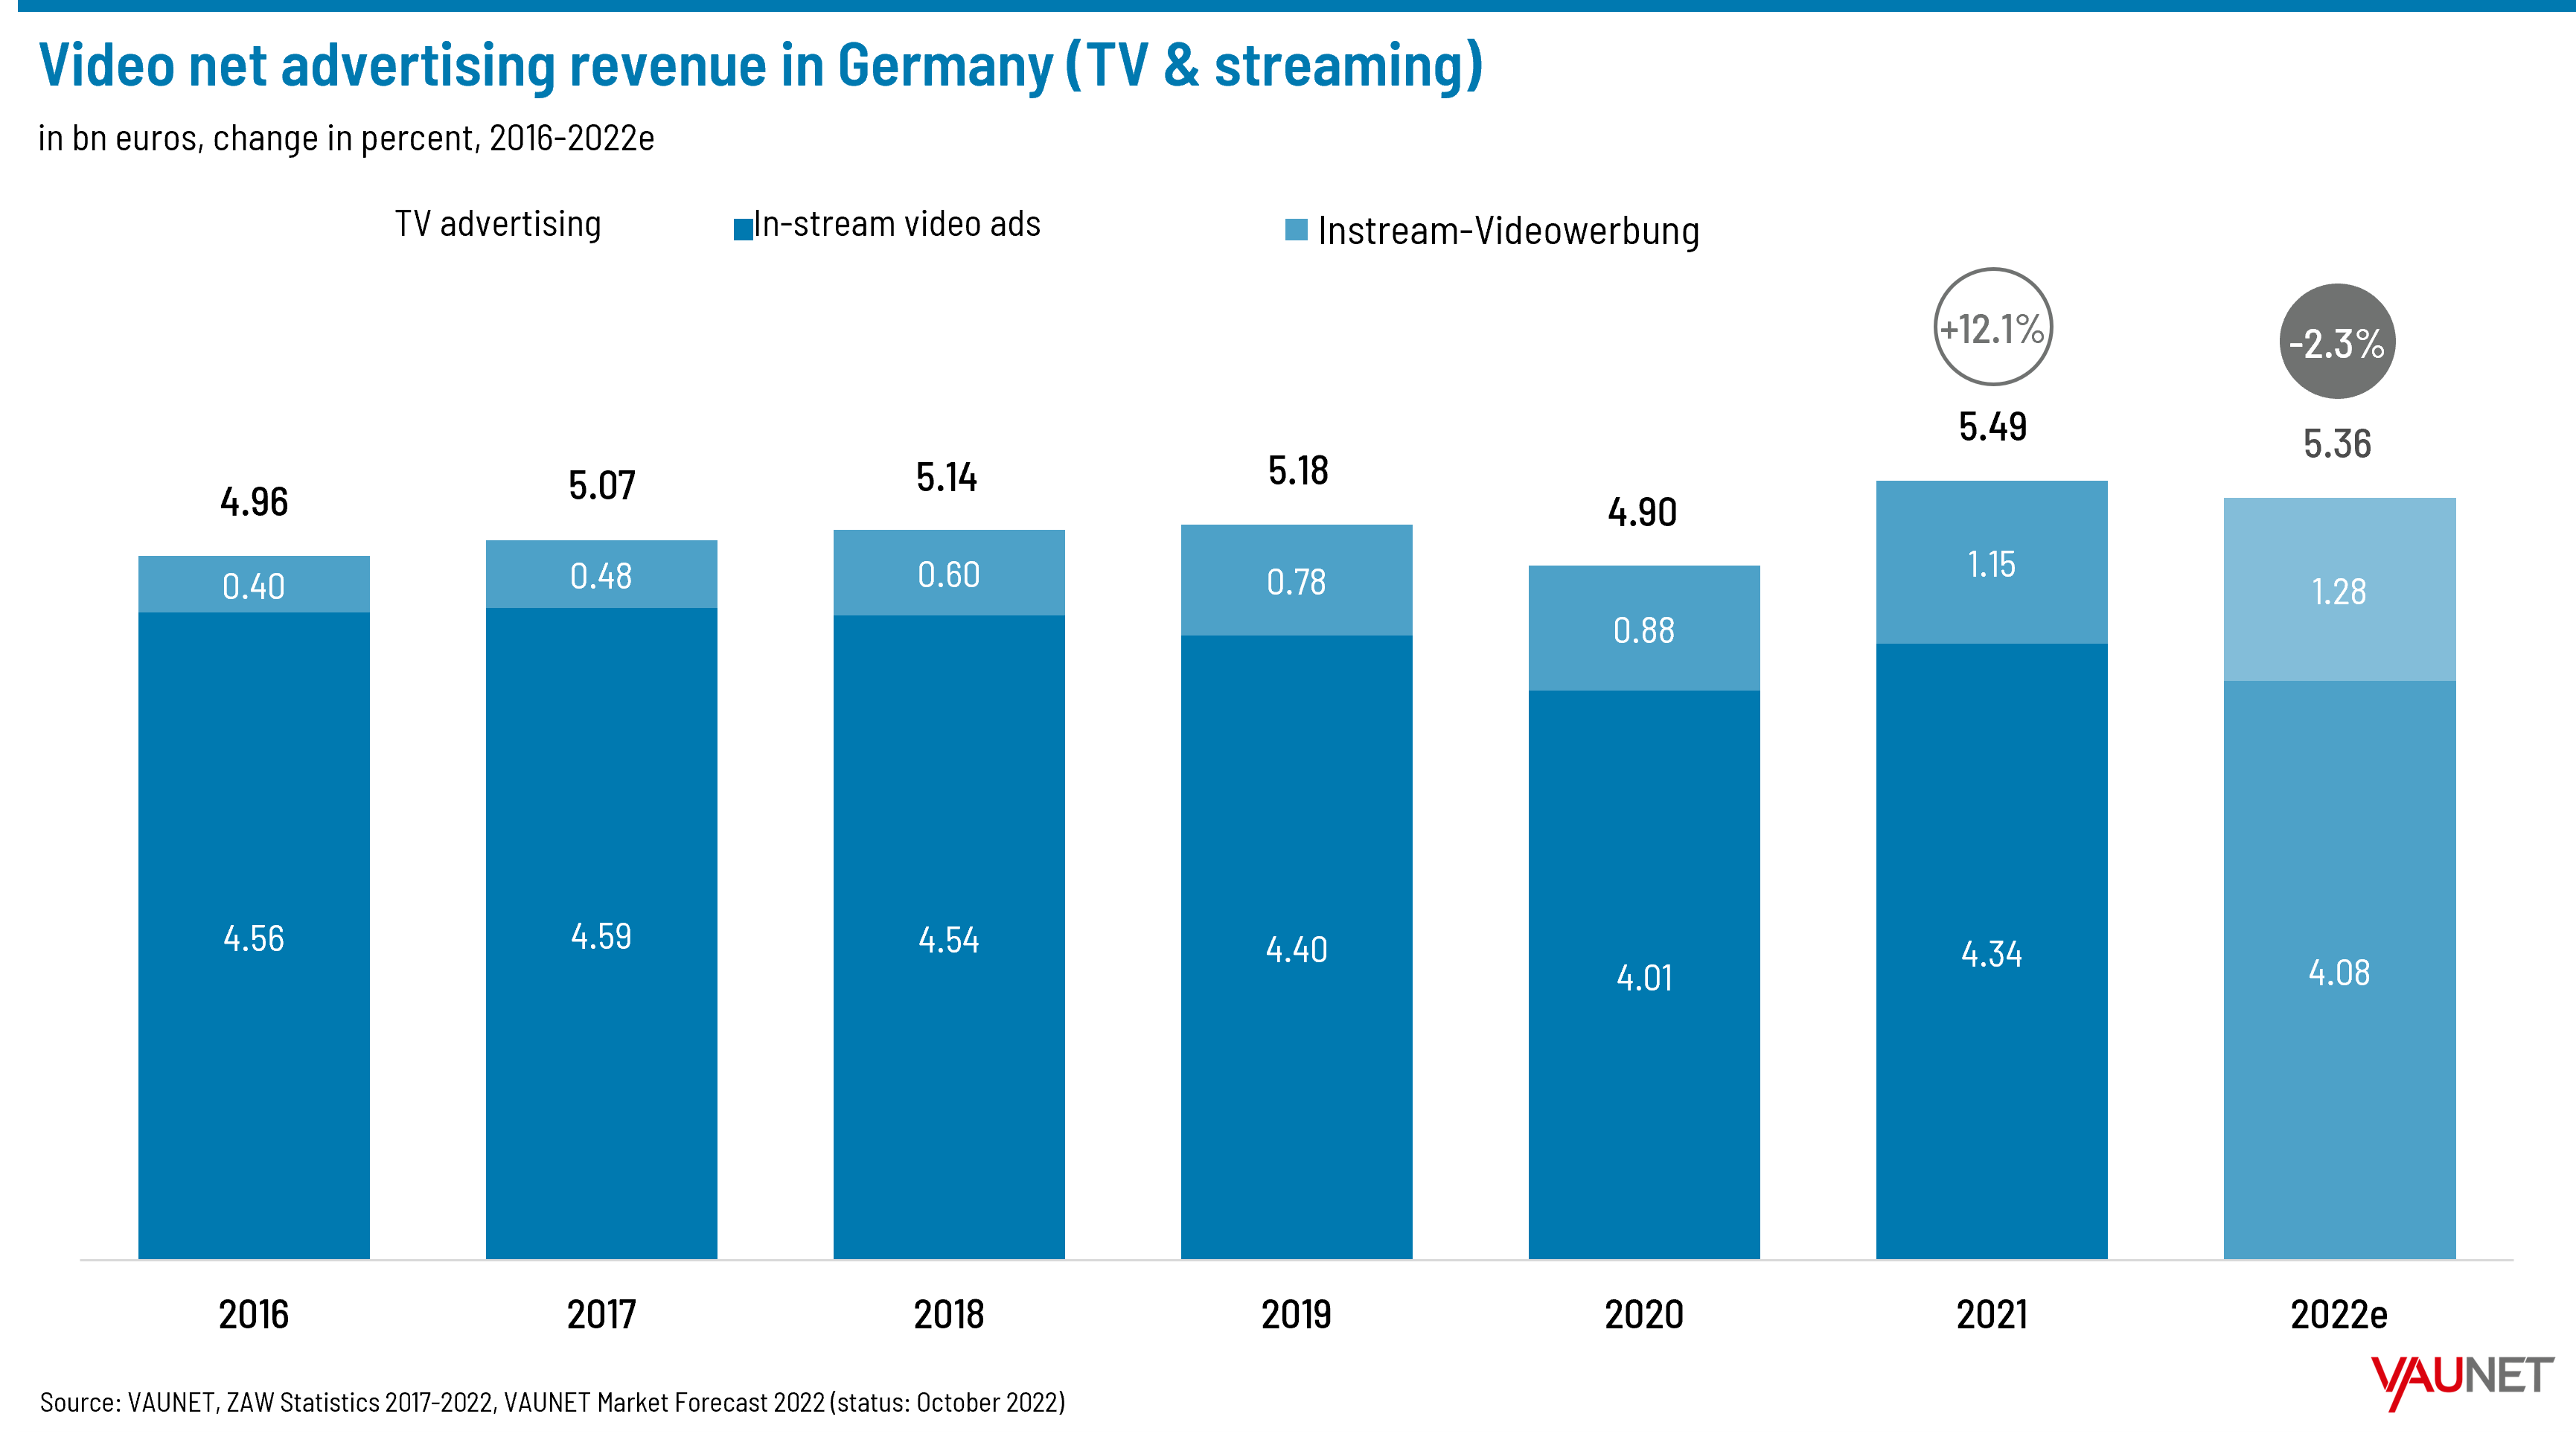 Video net advertising revenues in Germany - 2016-2022